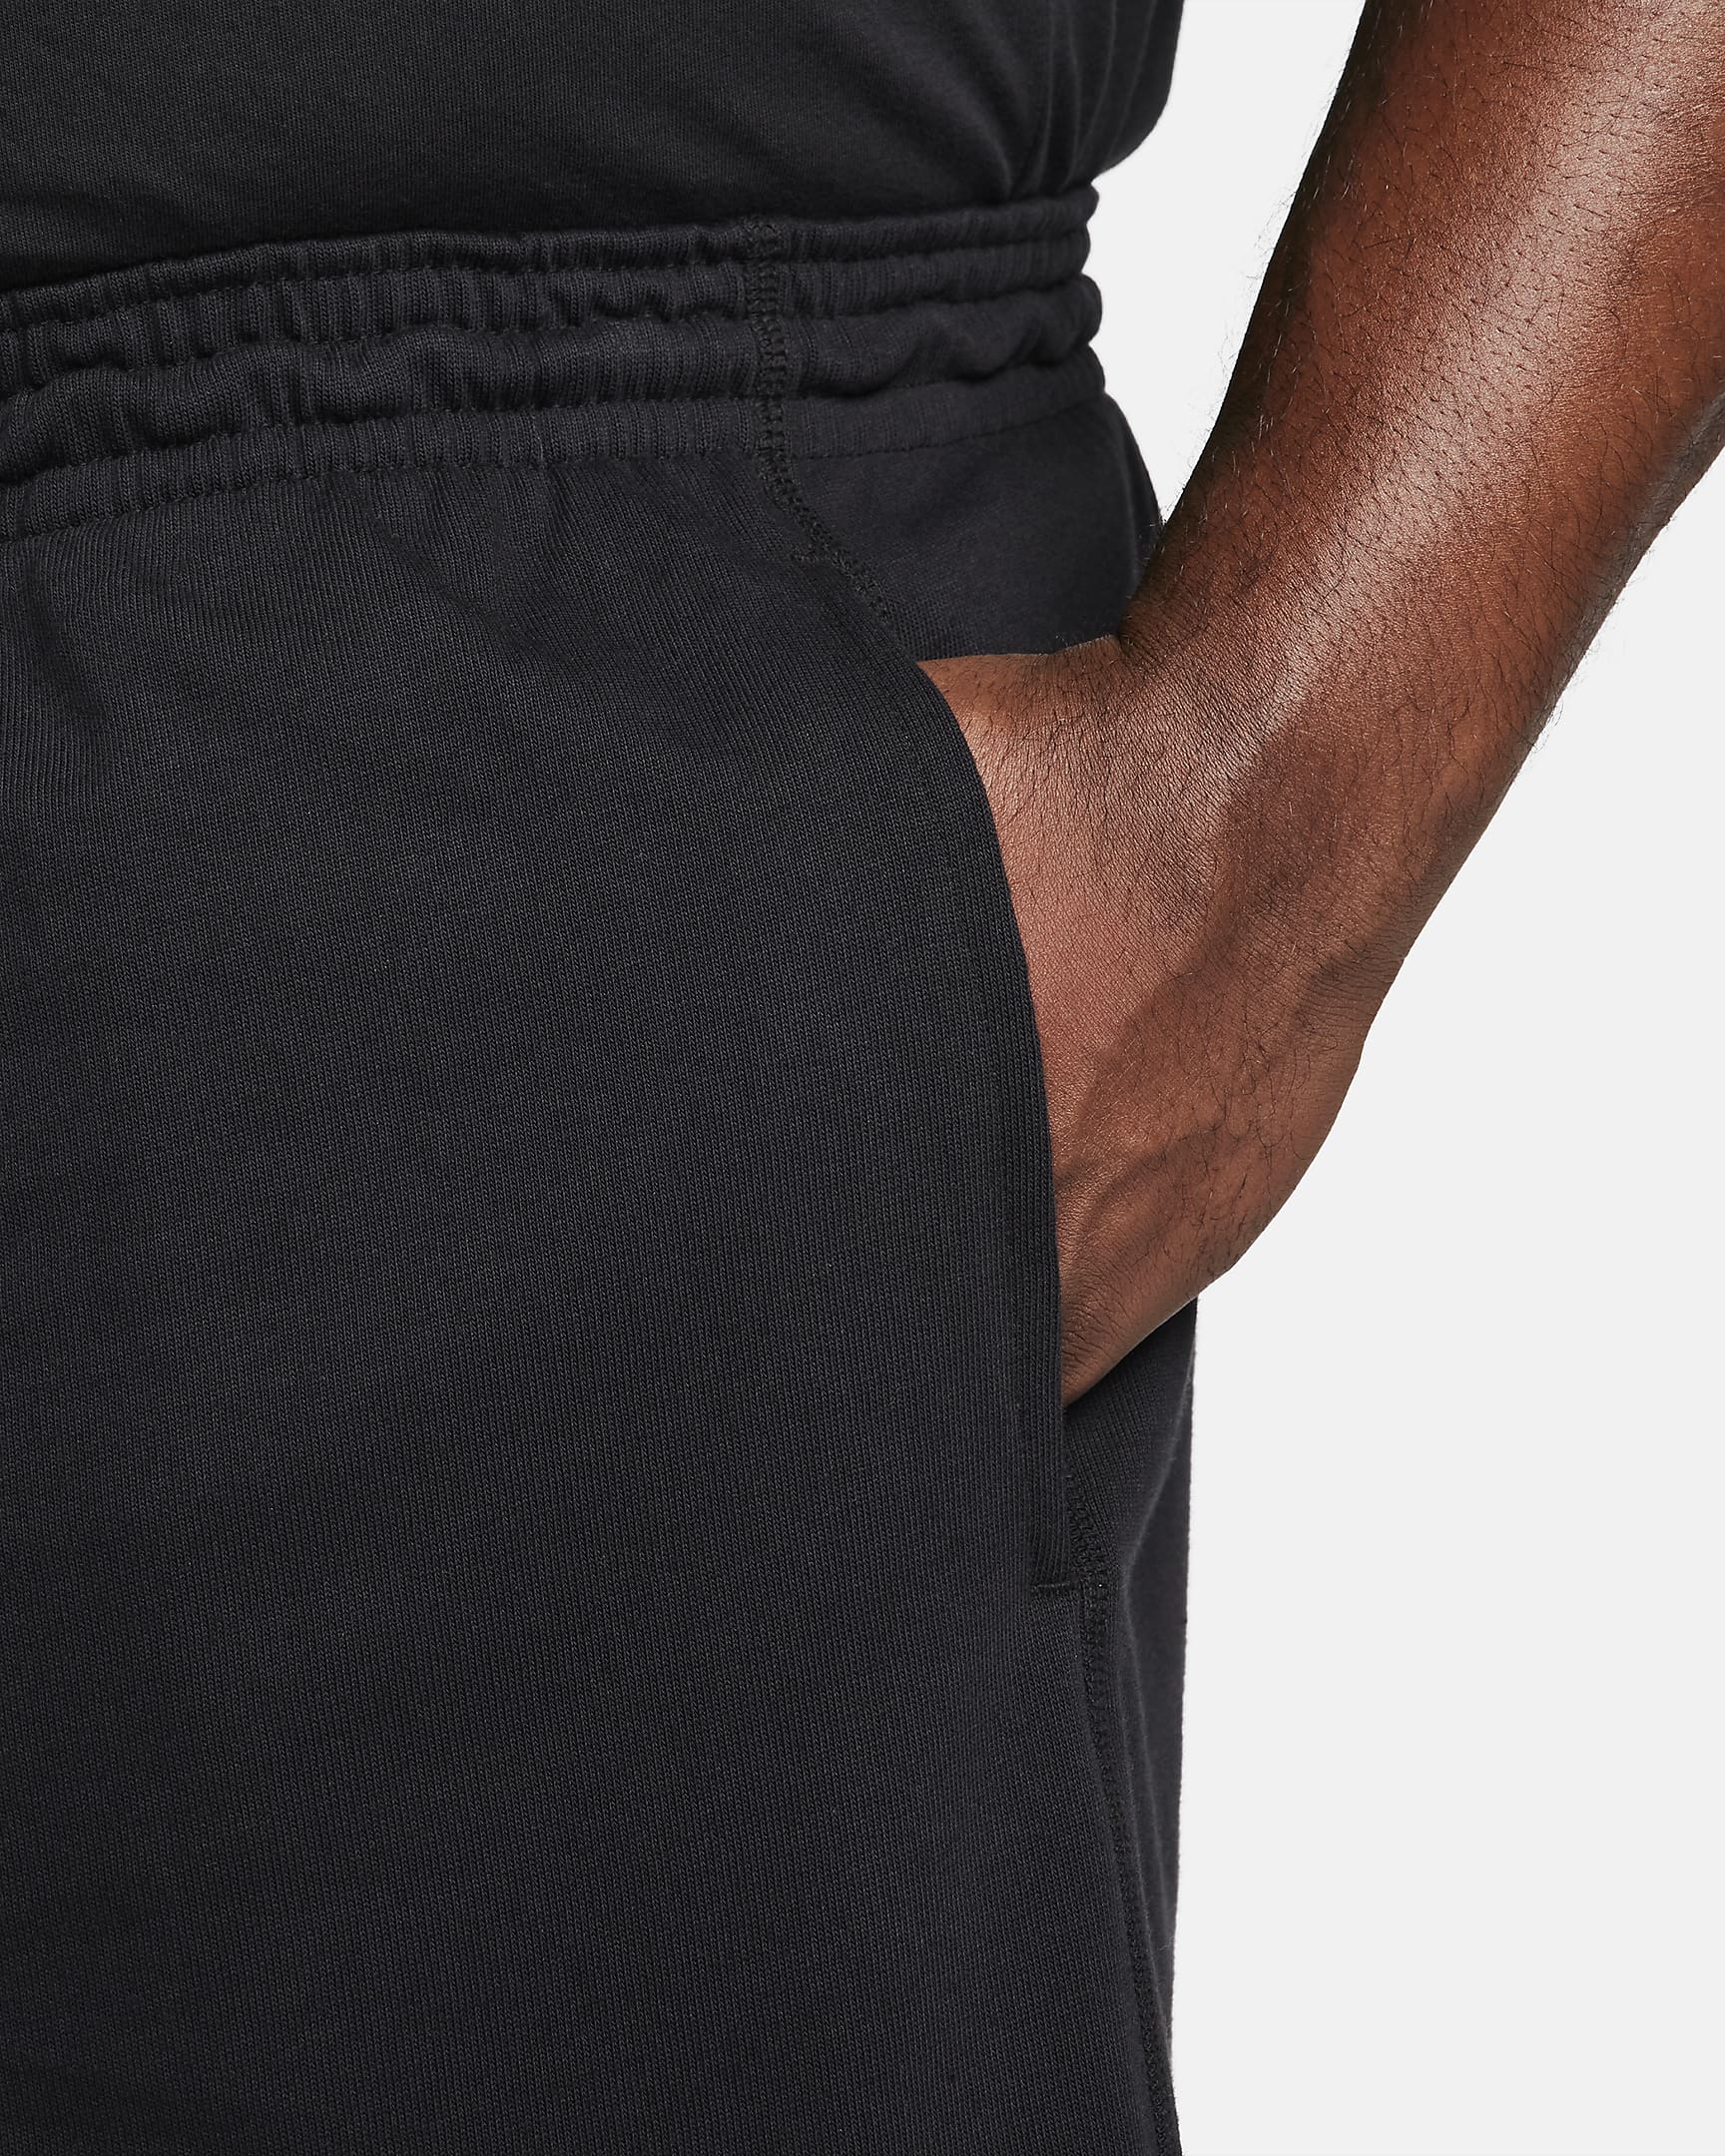 Shorts tejidos para hombre Nike Club. Nike.com